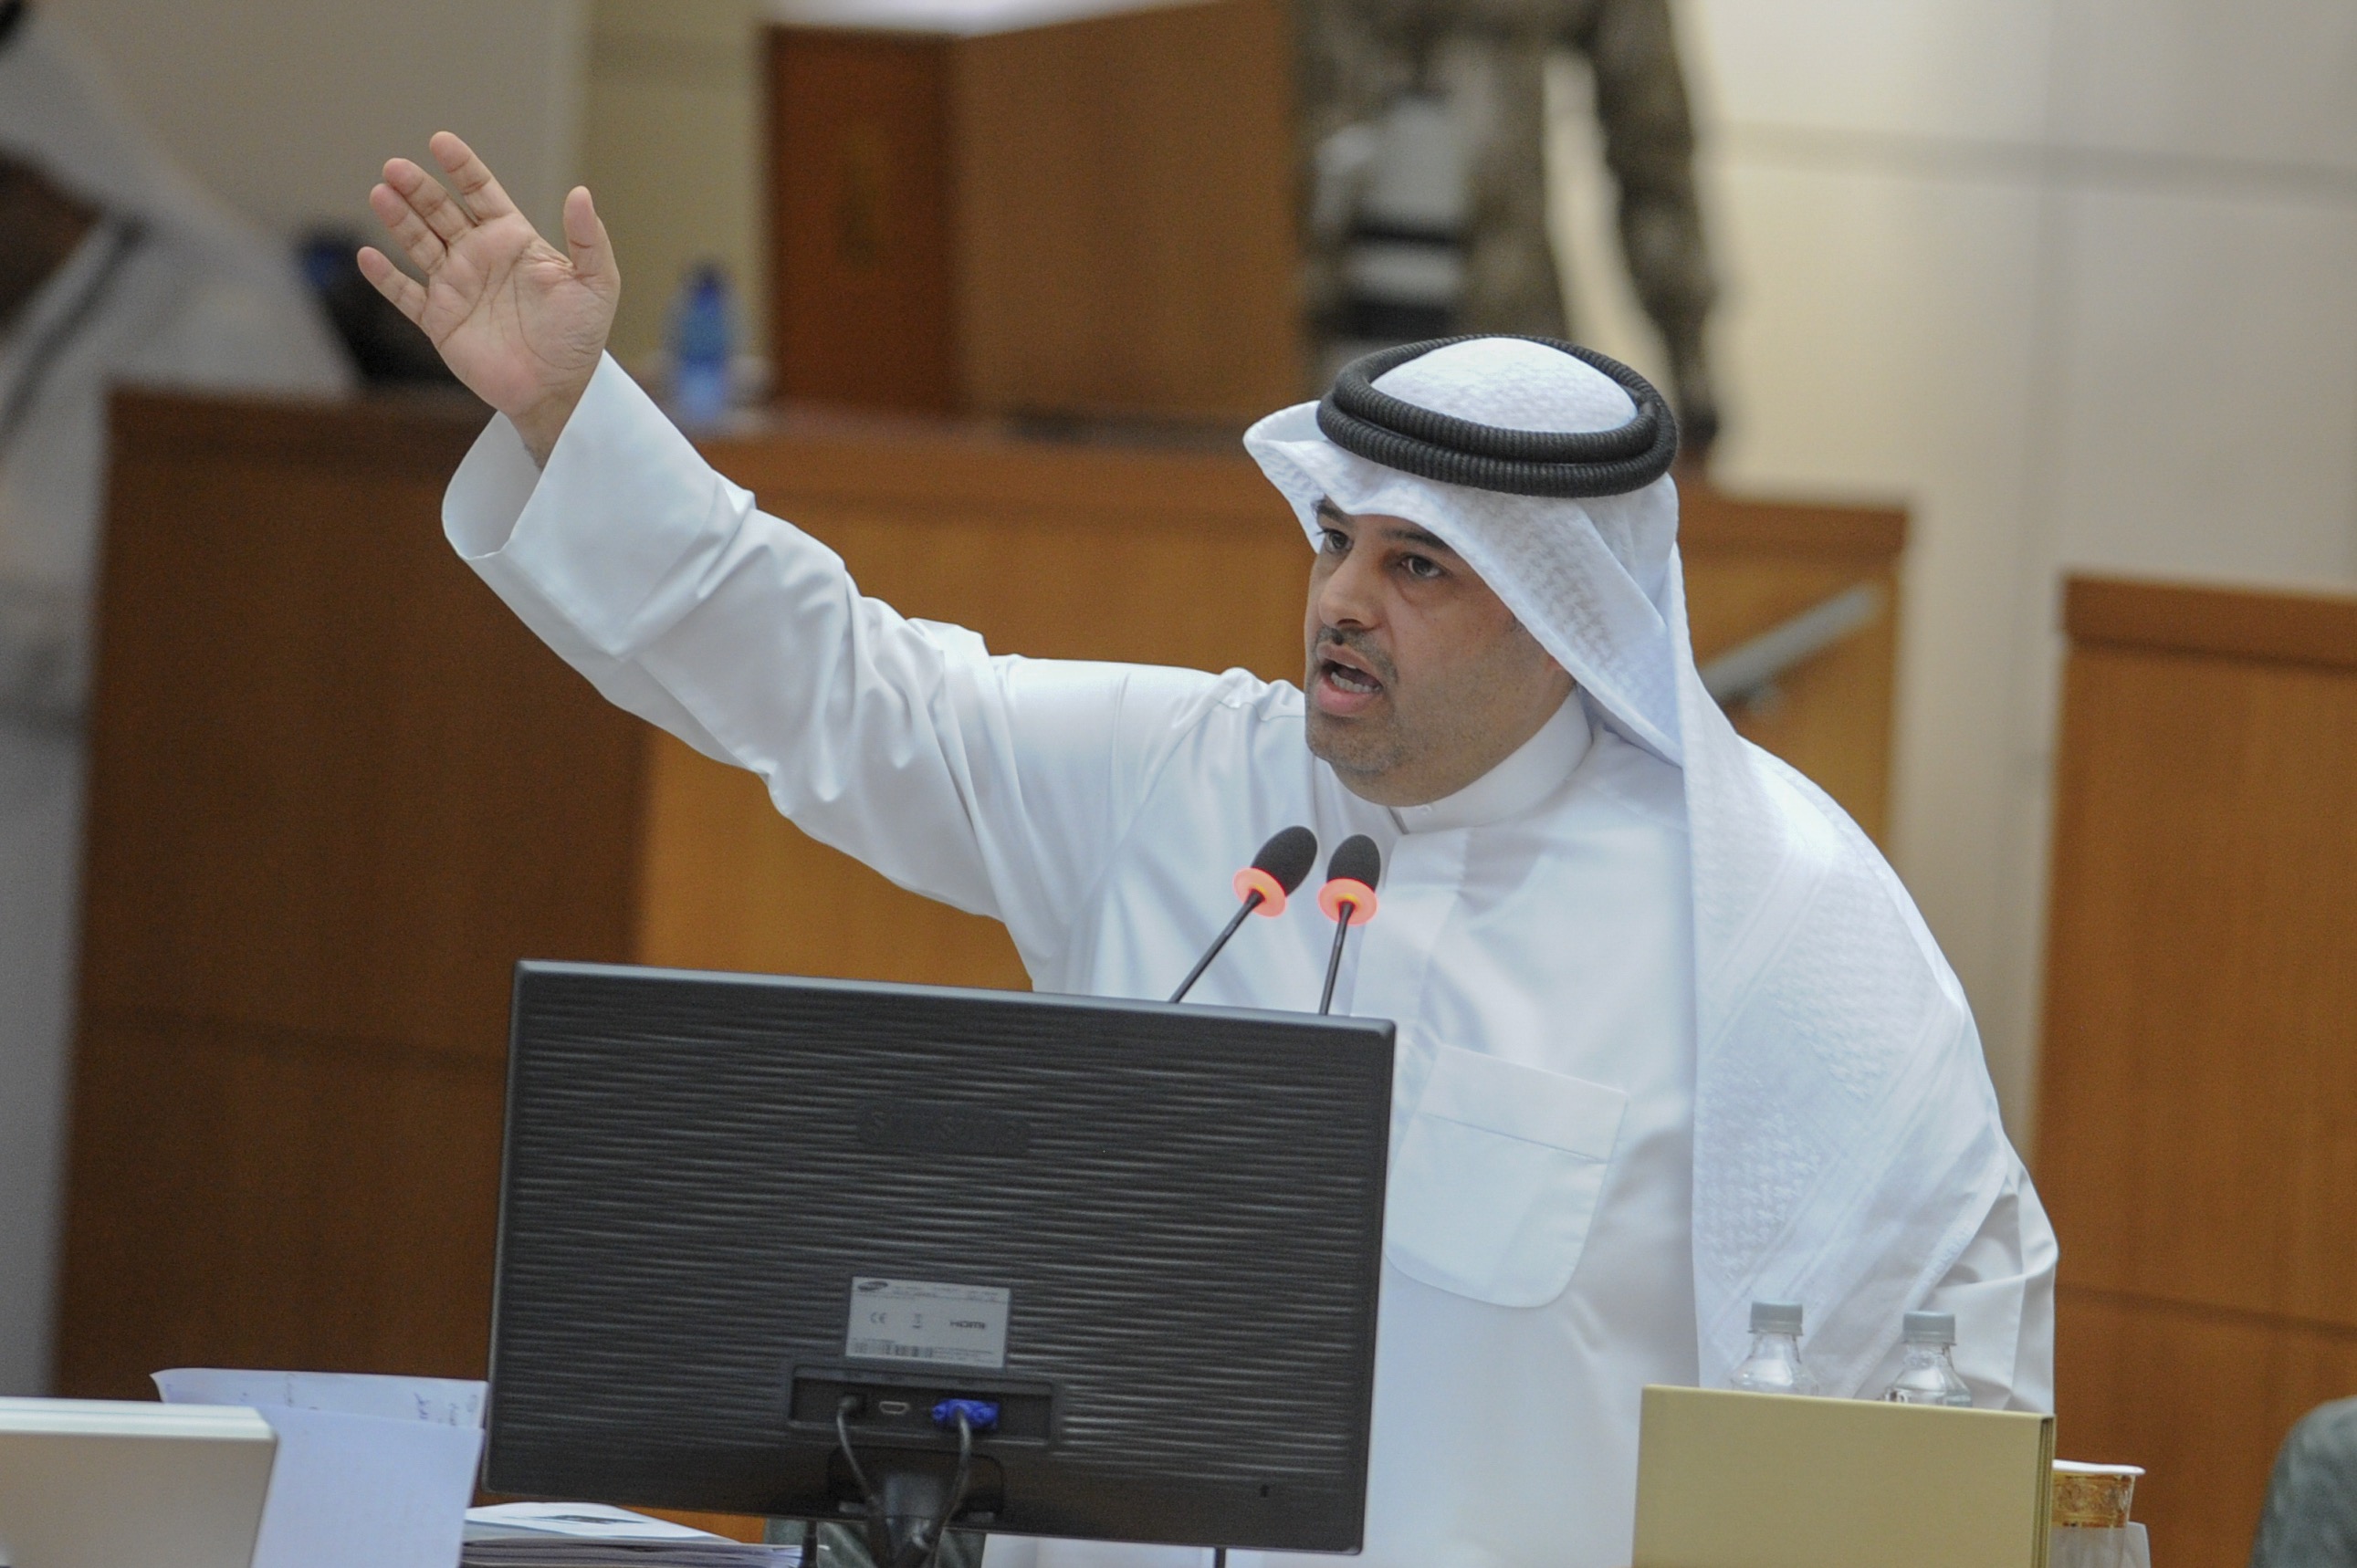 Member of the Kuwaiti National Assembly Mubarak Al-Hajraf